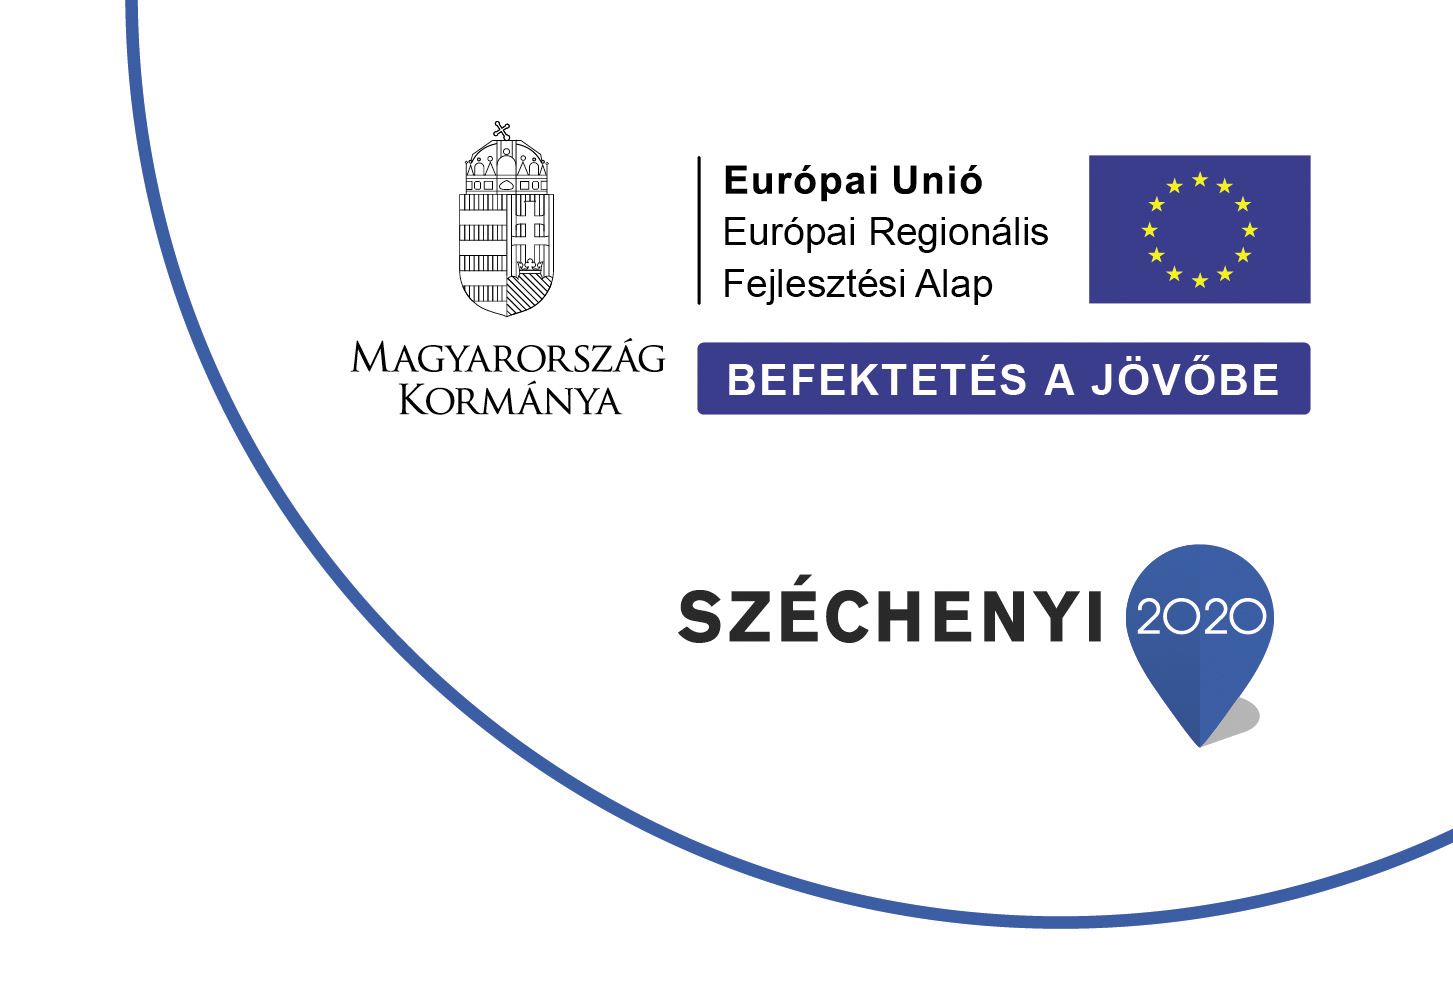 Széchenyi 2020 - Európai Regionális Fejlesztési Alap 